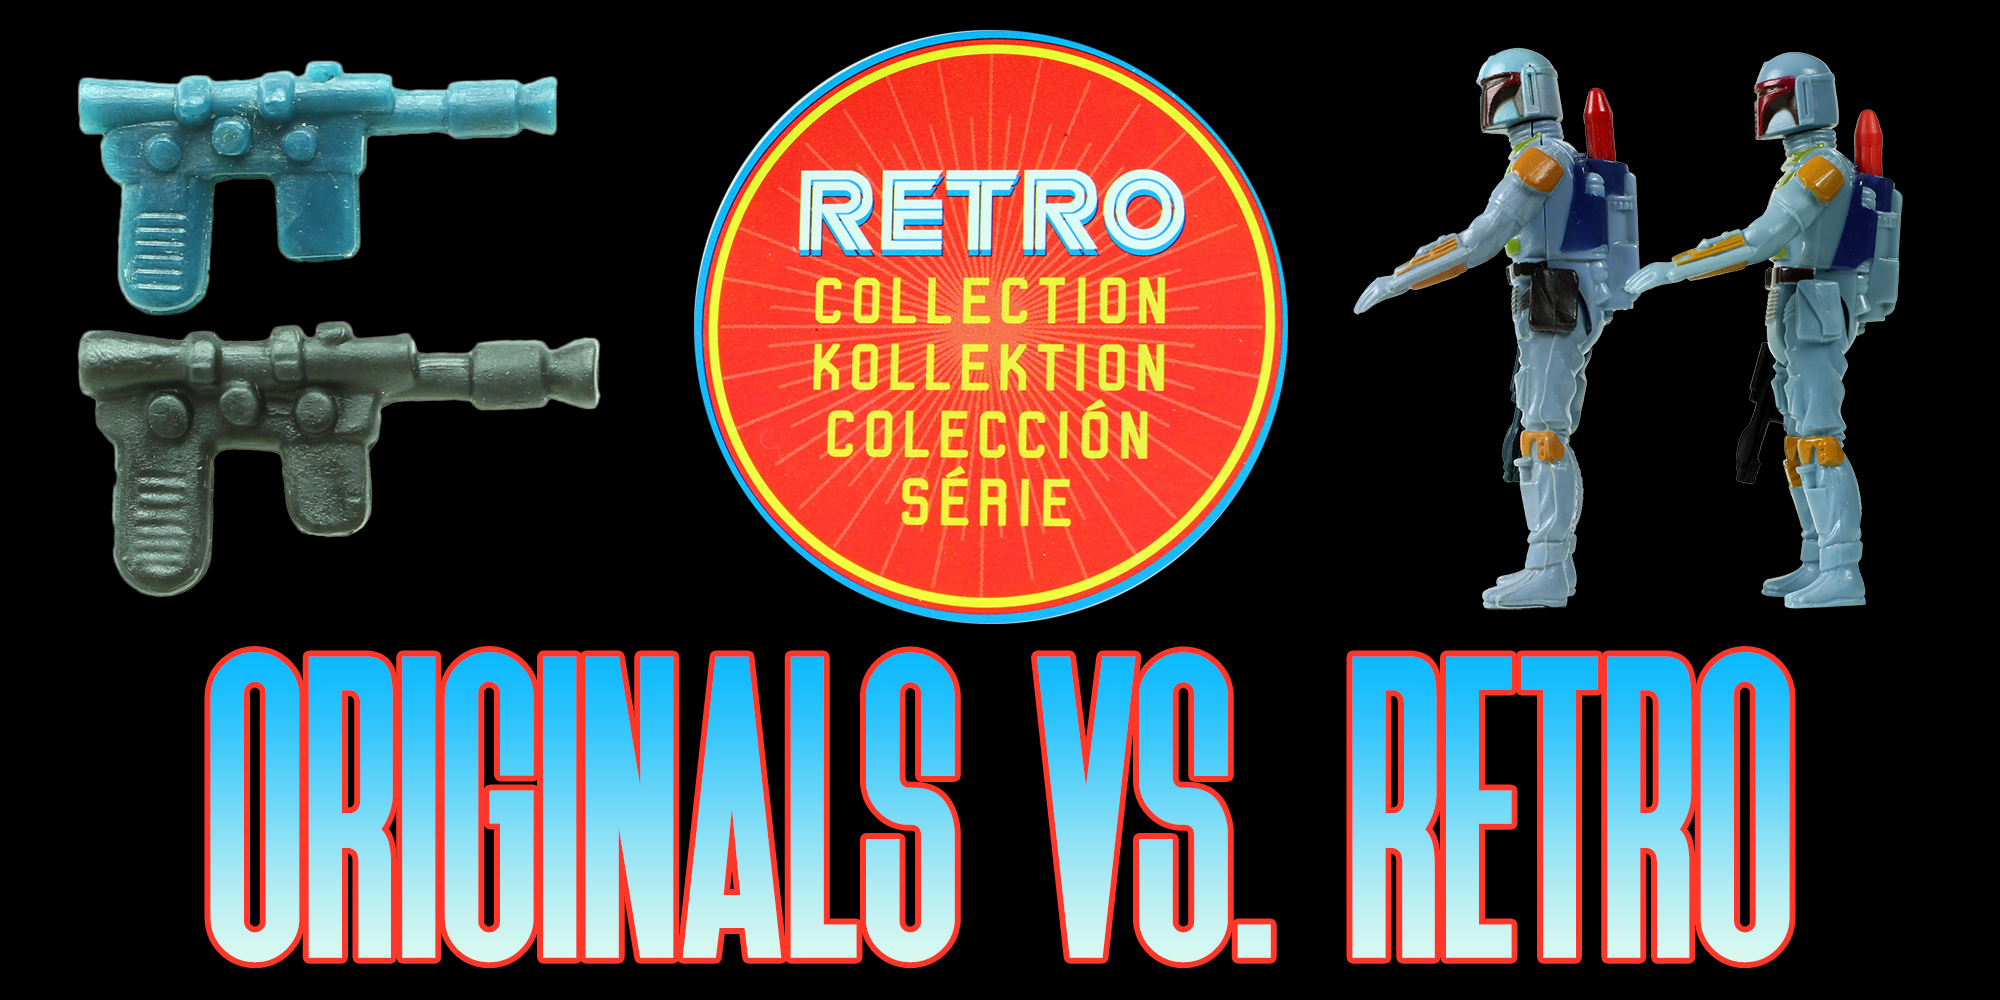 Hasbro Vs. Kenner | The Empire Strikes Back Retro Collection Comparison